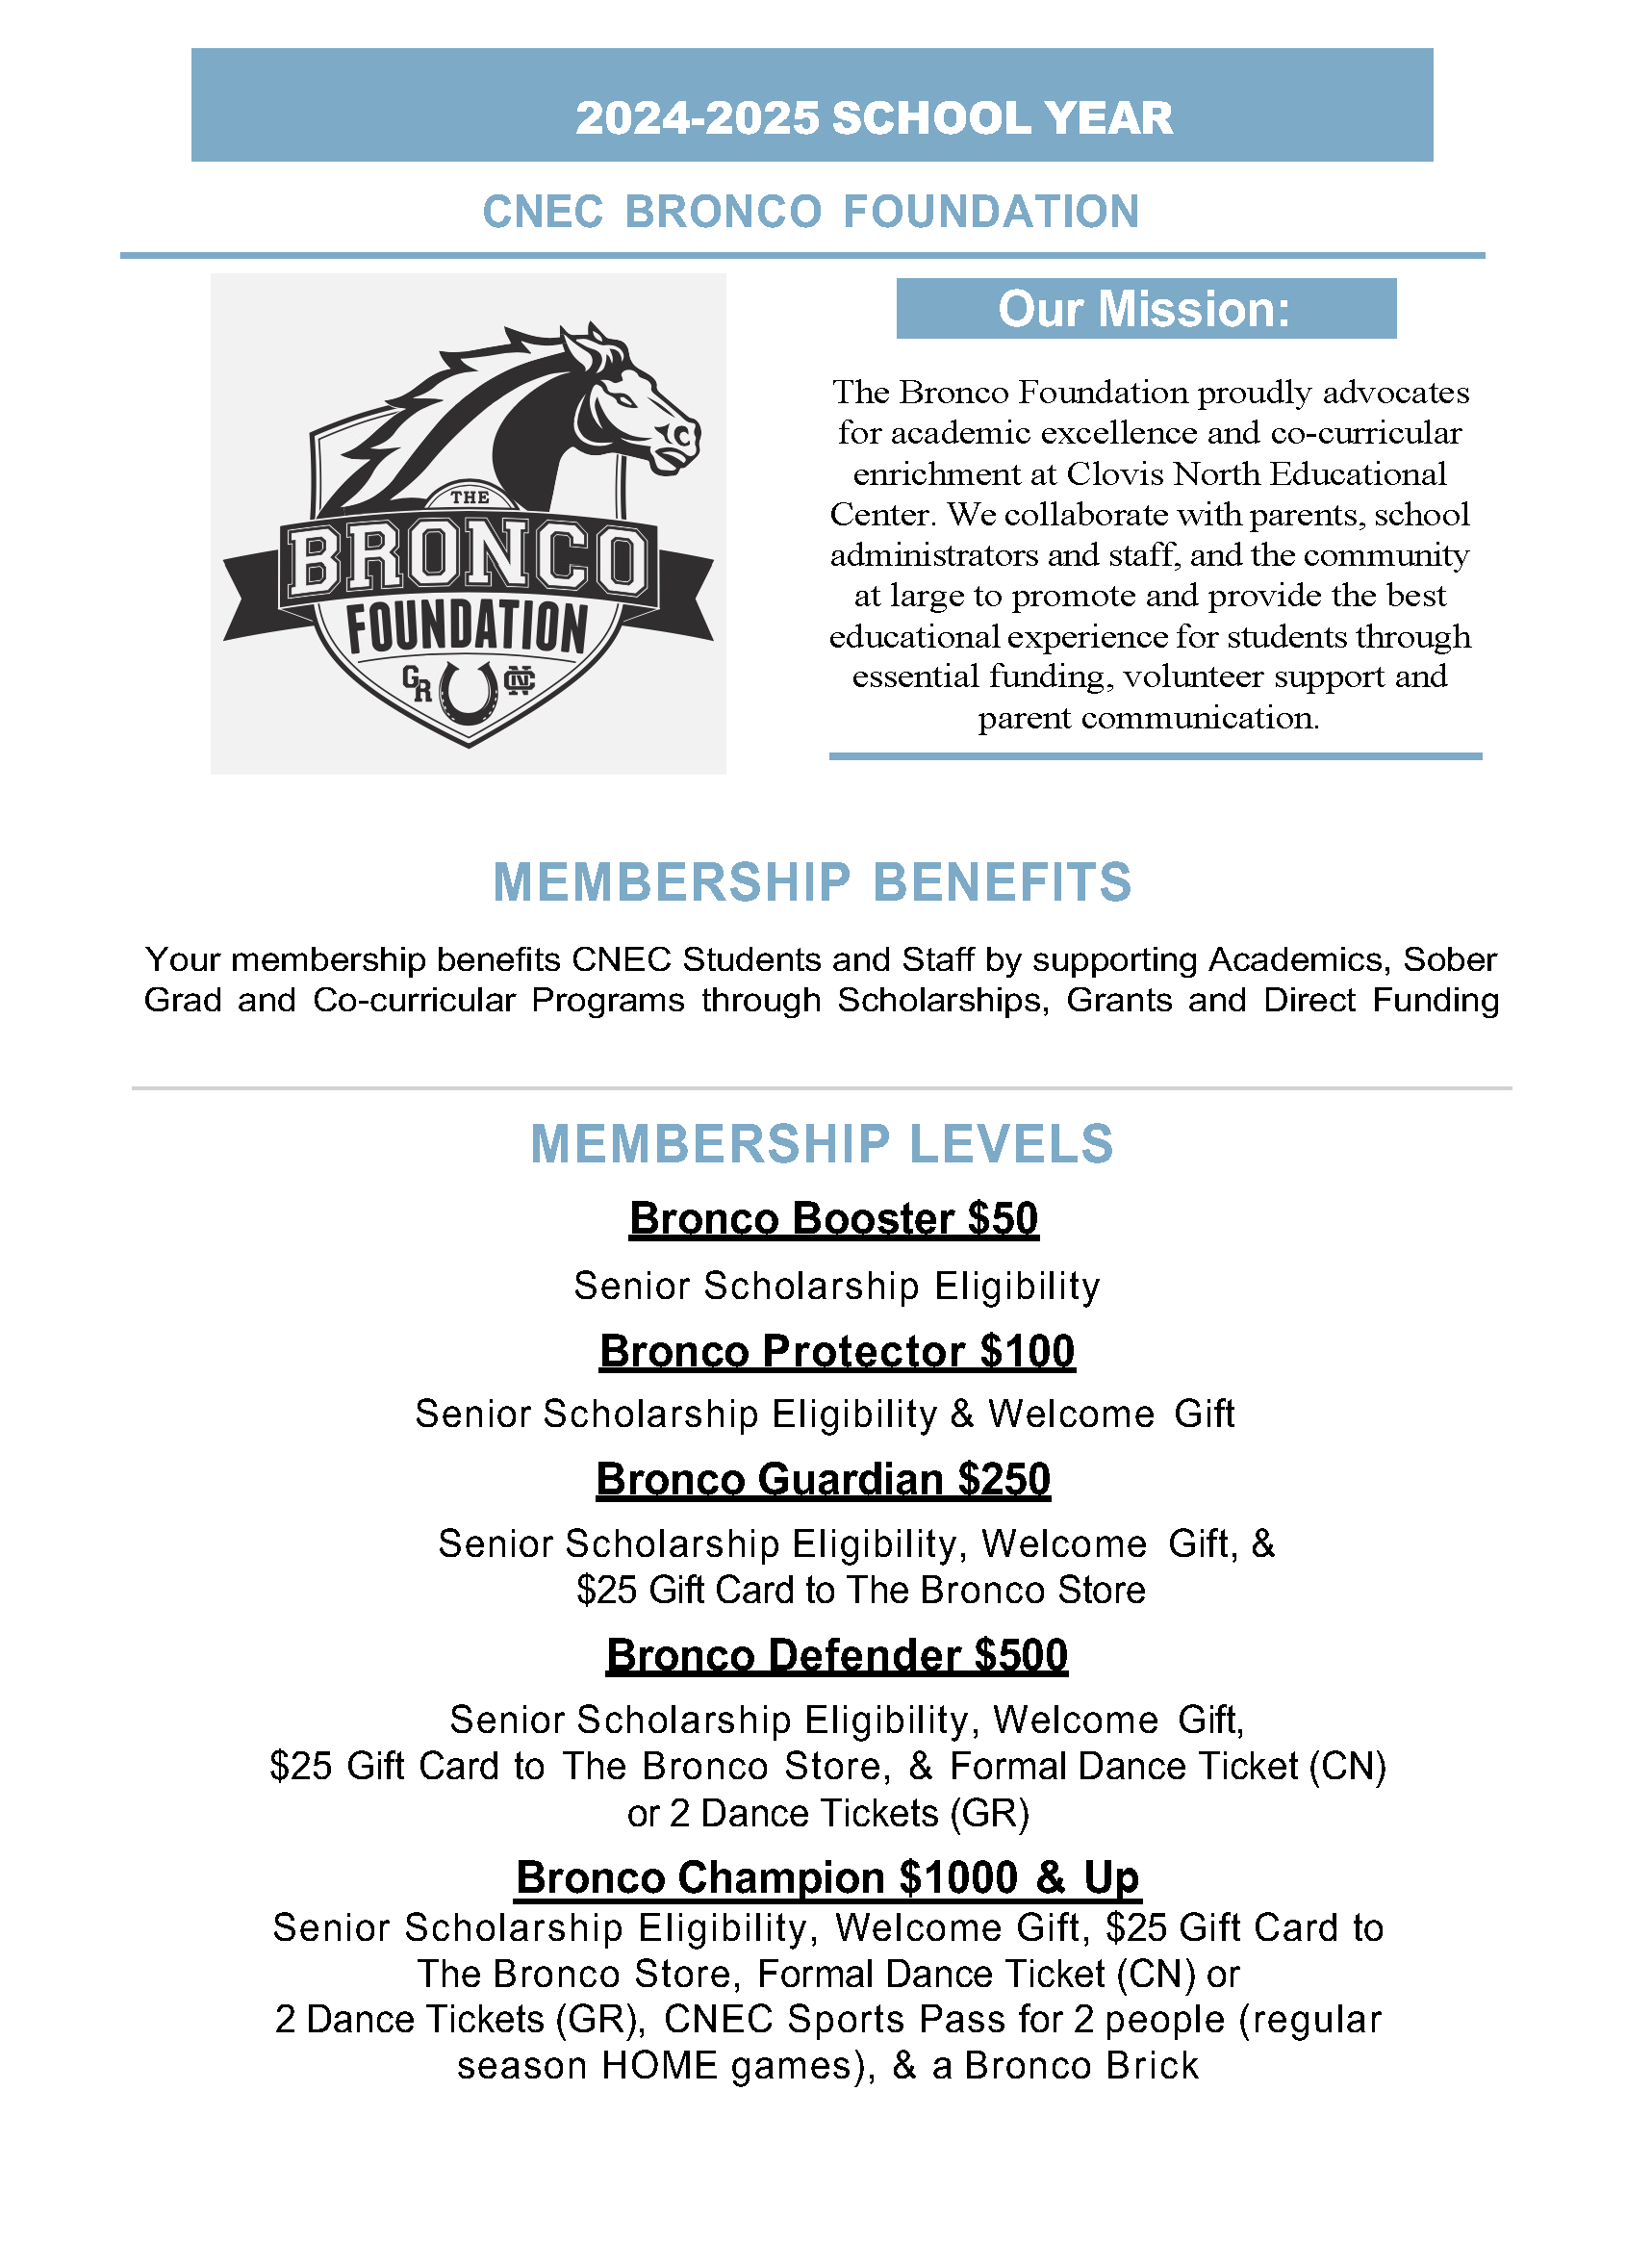 membership information